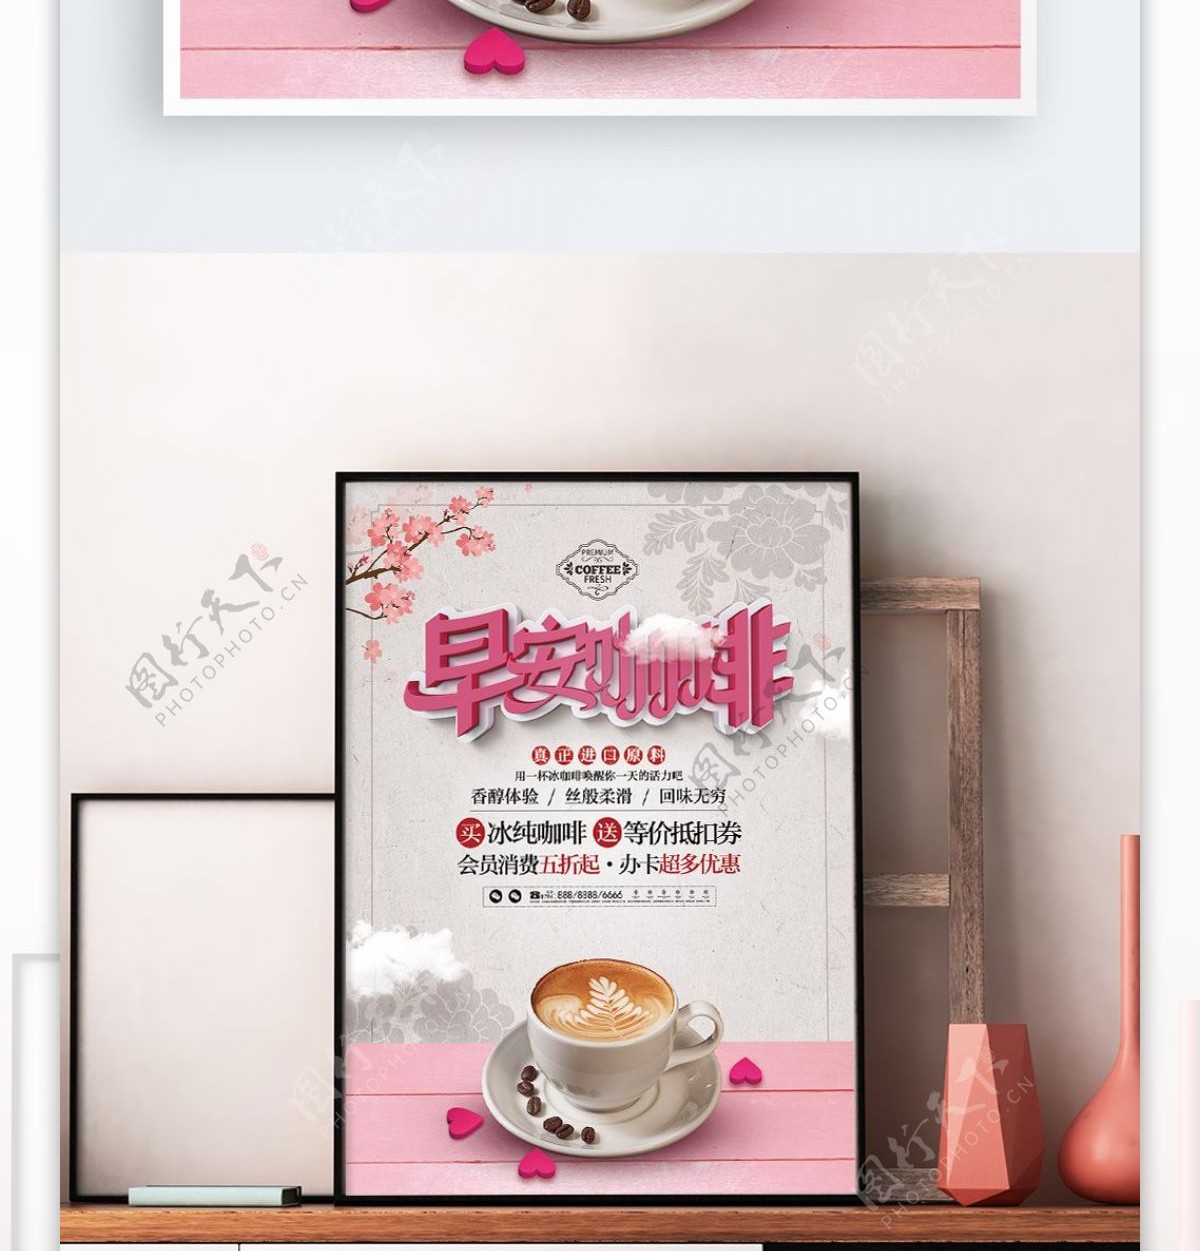 清新简约早安冰咖啡美食饮品宣传促销海报